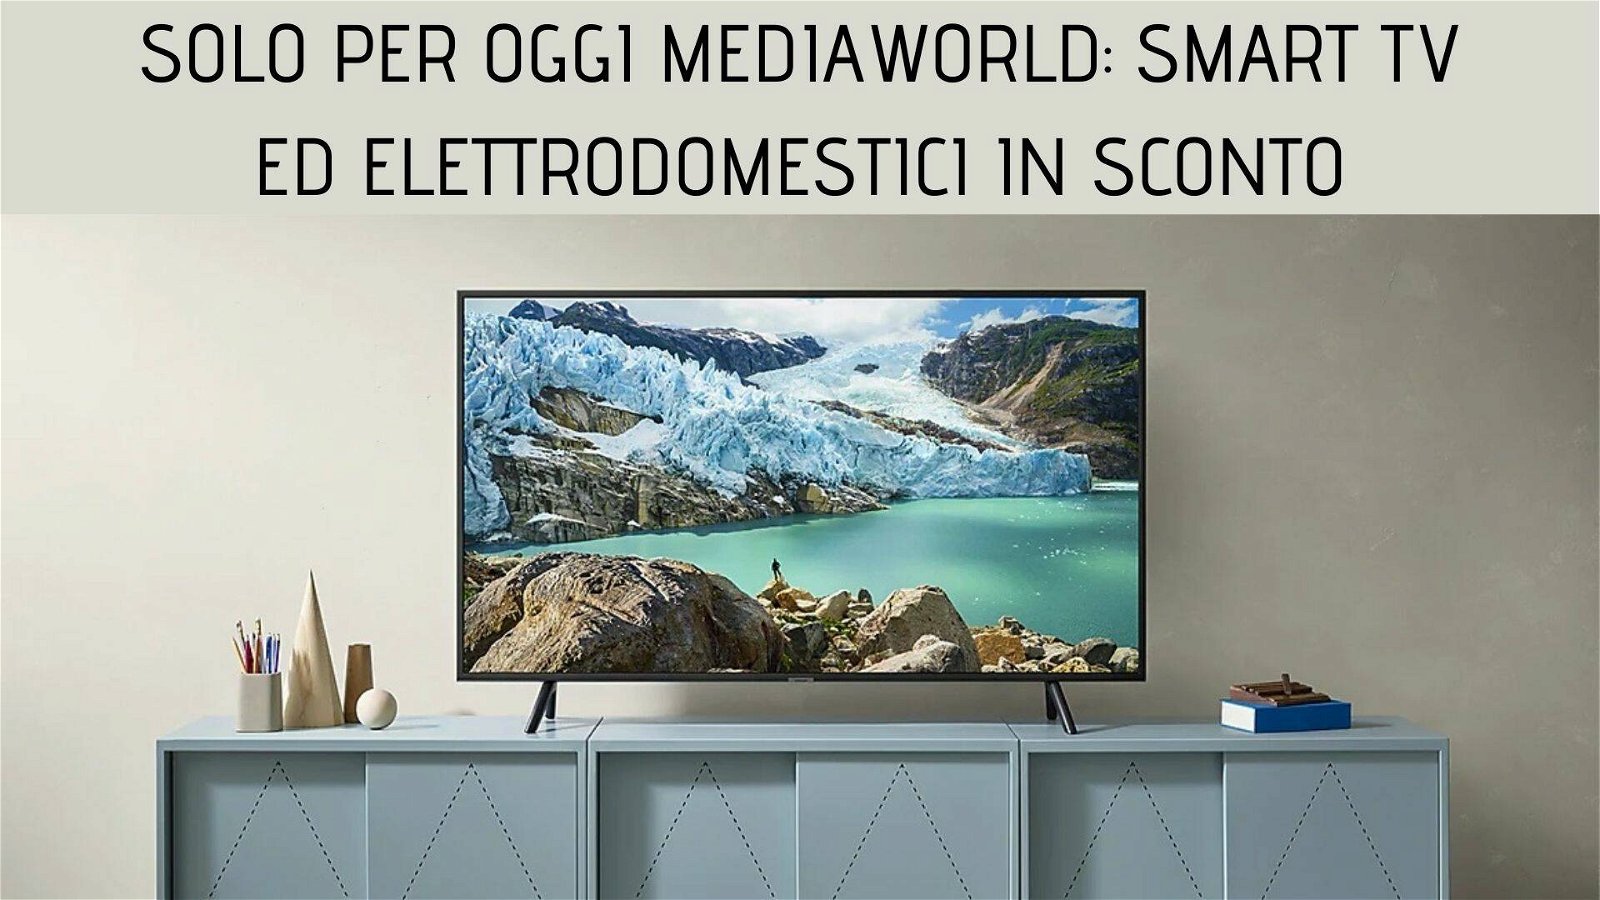 Immagine di Smart TV e tanti elettrodomestici in sconto nel Solo per oggi Mediaworld